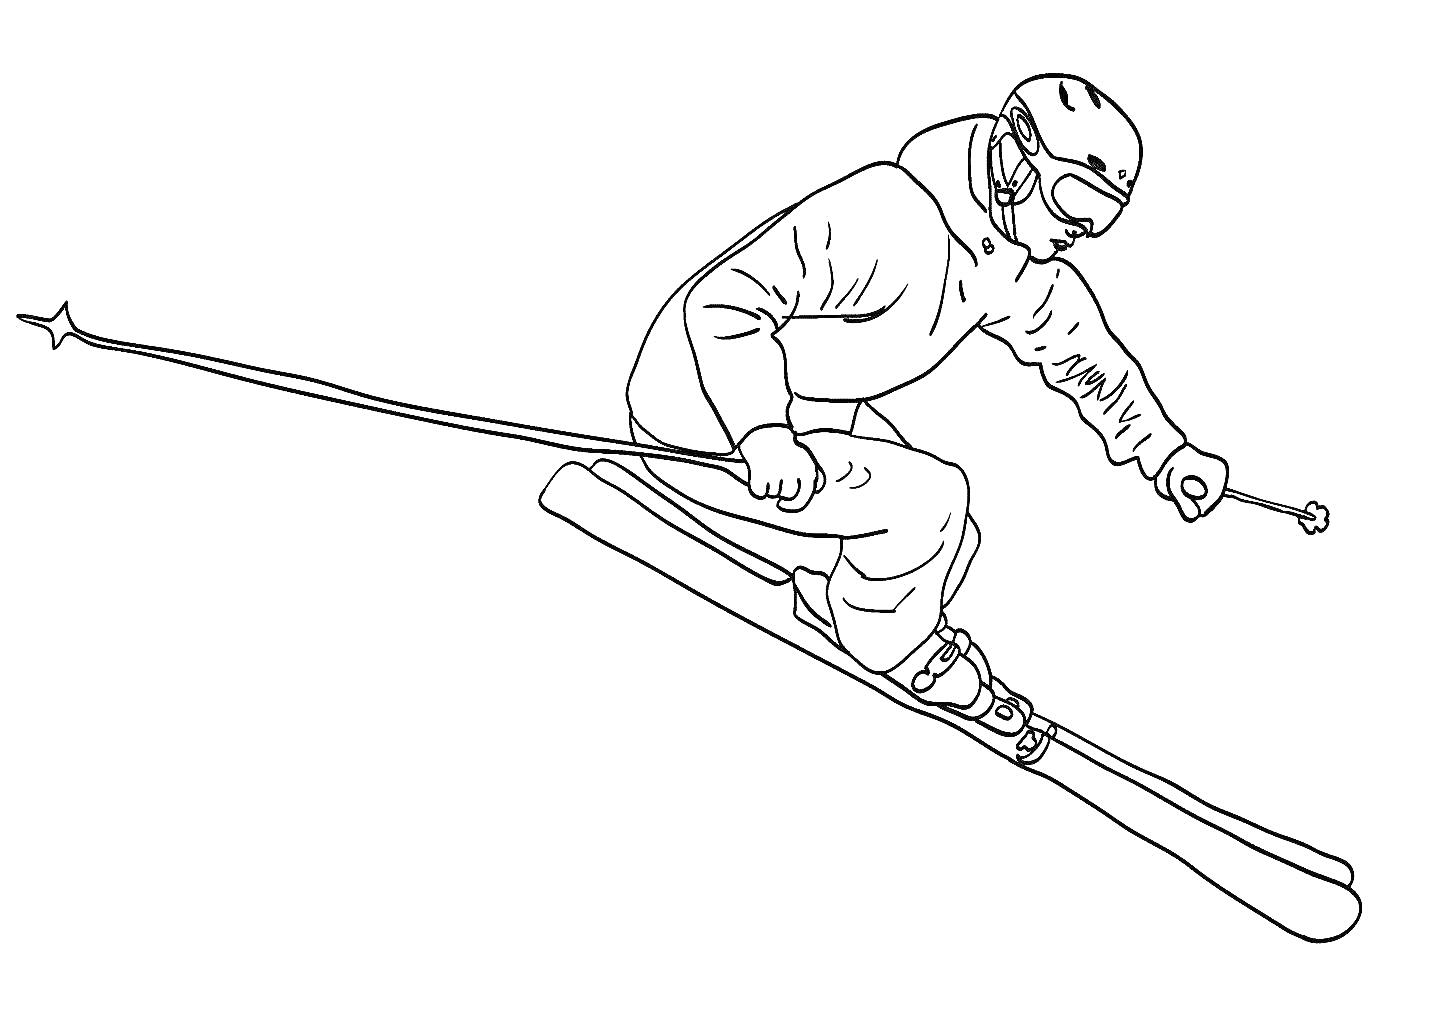 Горнолыжник в прыжке с палками, в шлеме и защитных очках